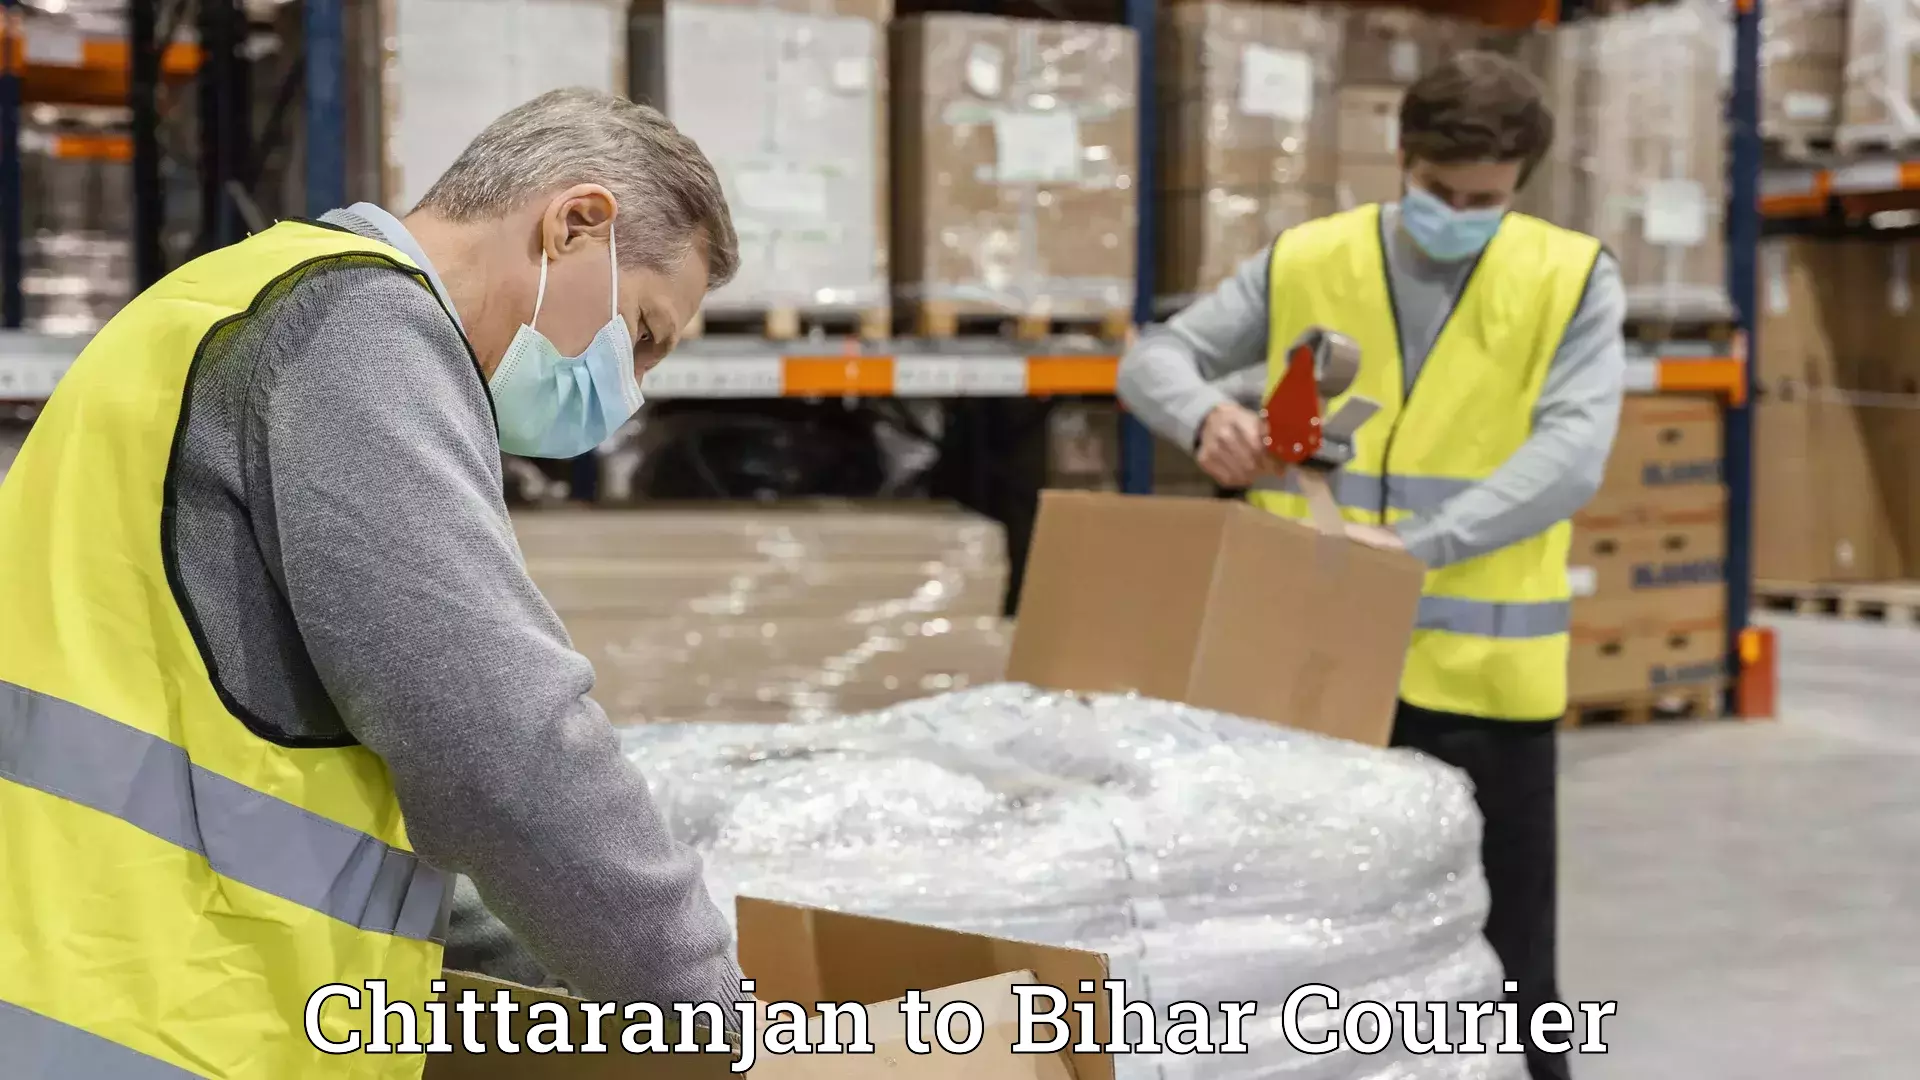 Furniture moving experts Chittaranjan to Bihar